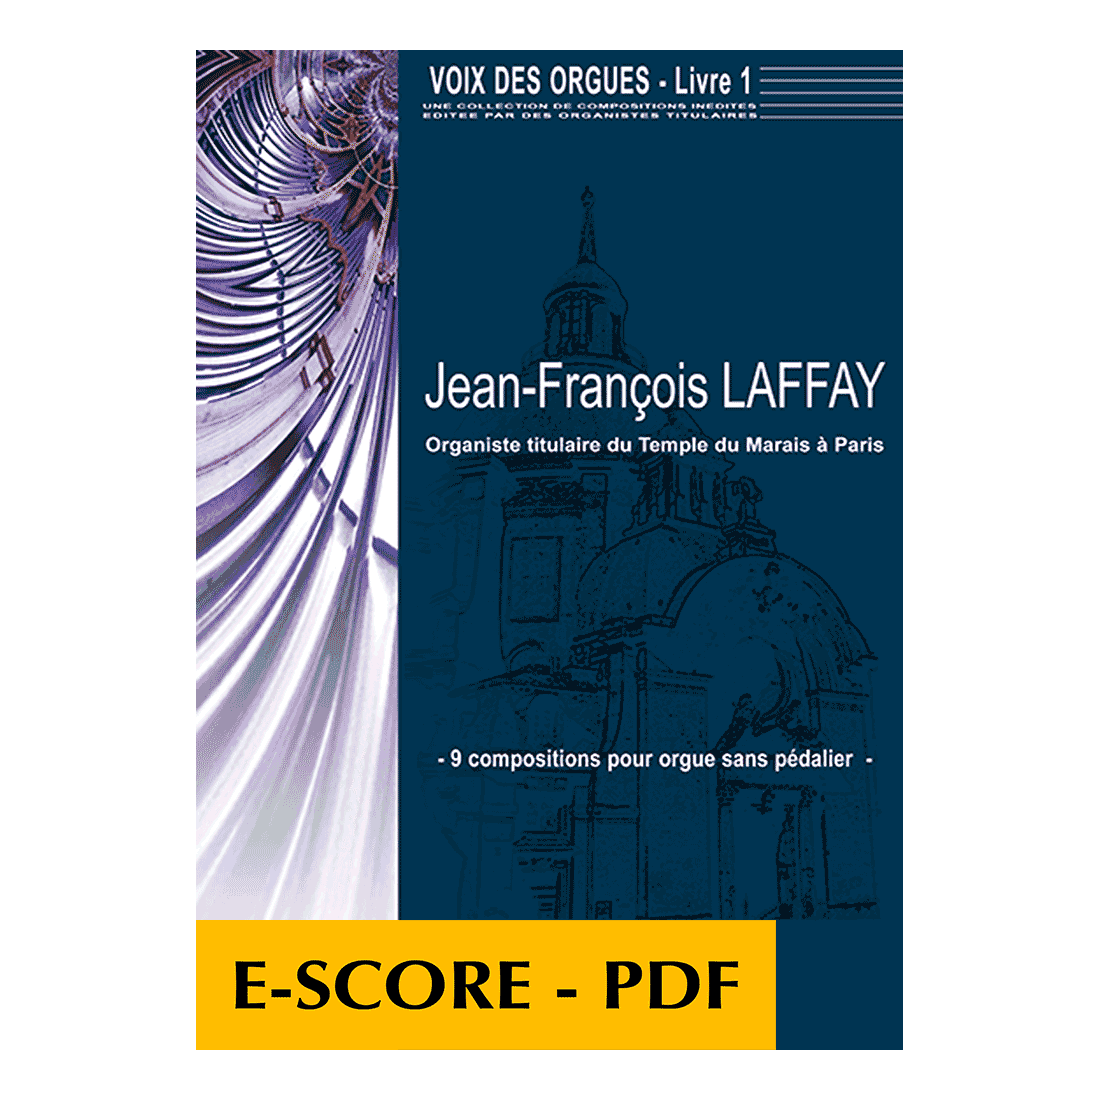 Voix des orgues, pour orgue sans pédale - Livre 1 - E-score PDF